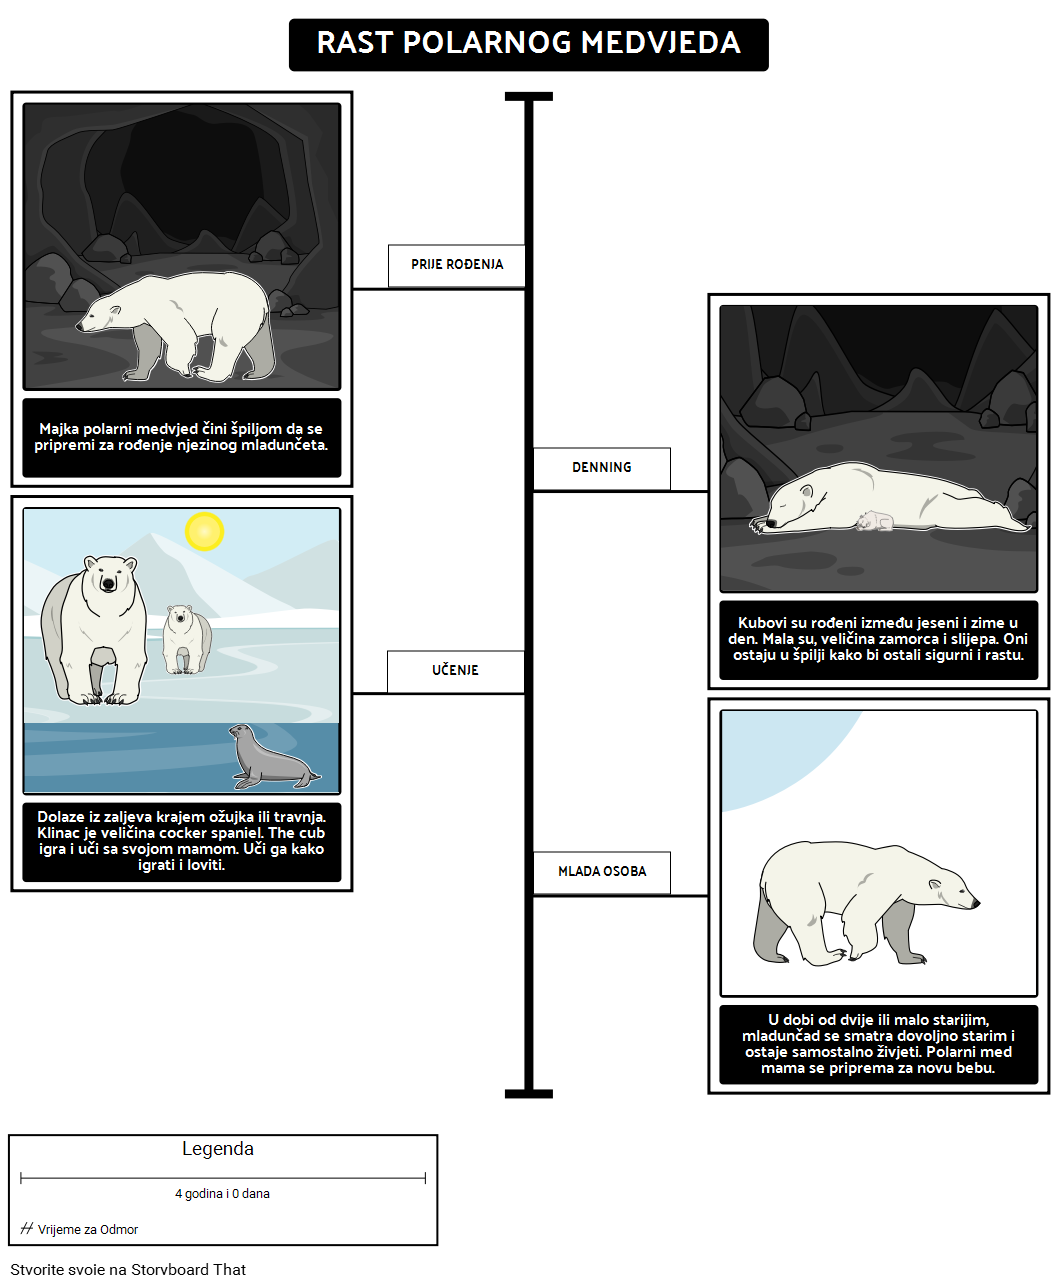 Gdje Žive Polarni Medvjedi? Rast Polarnog Medvjeda